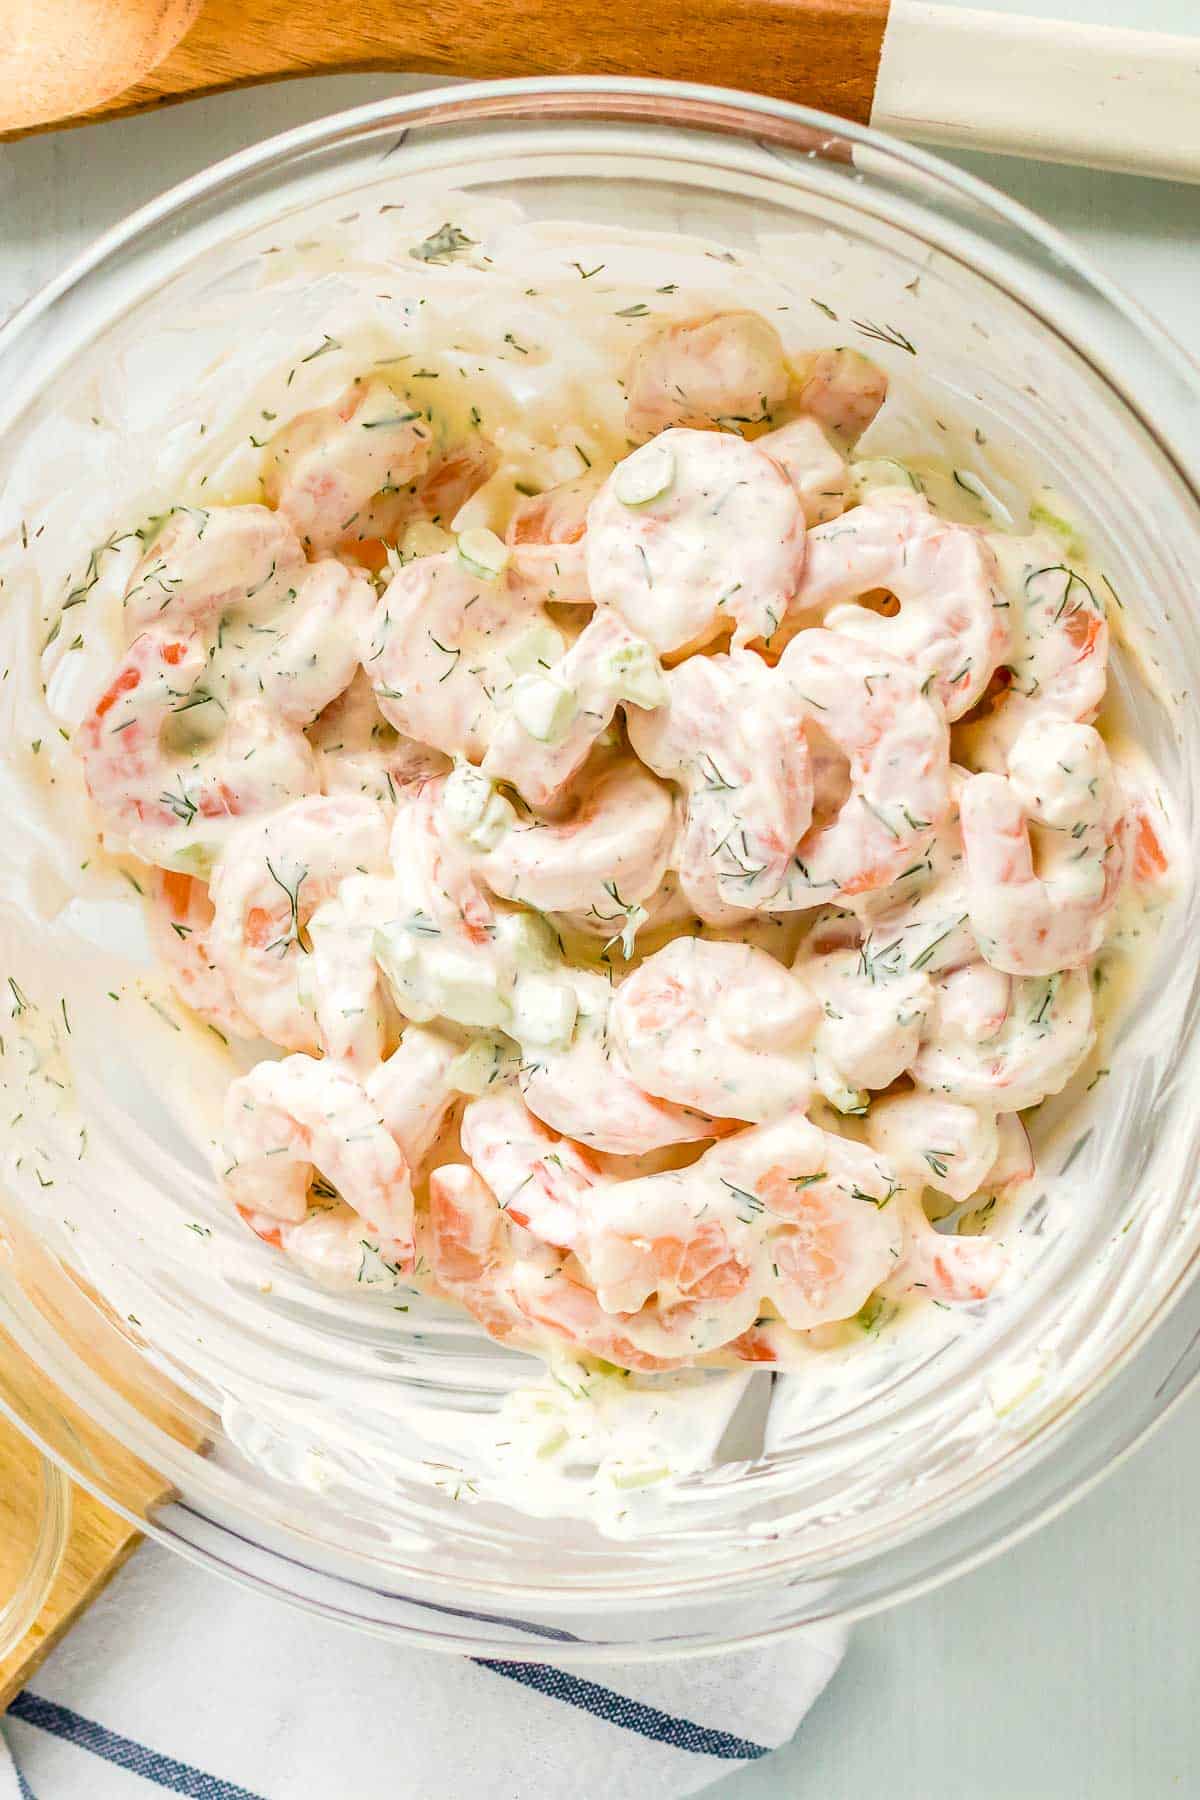 shrimp salad ingredients mixed together.